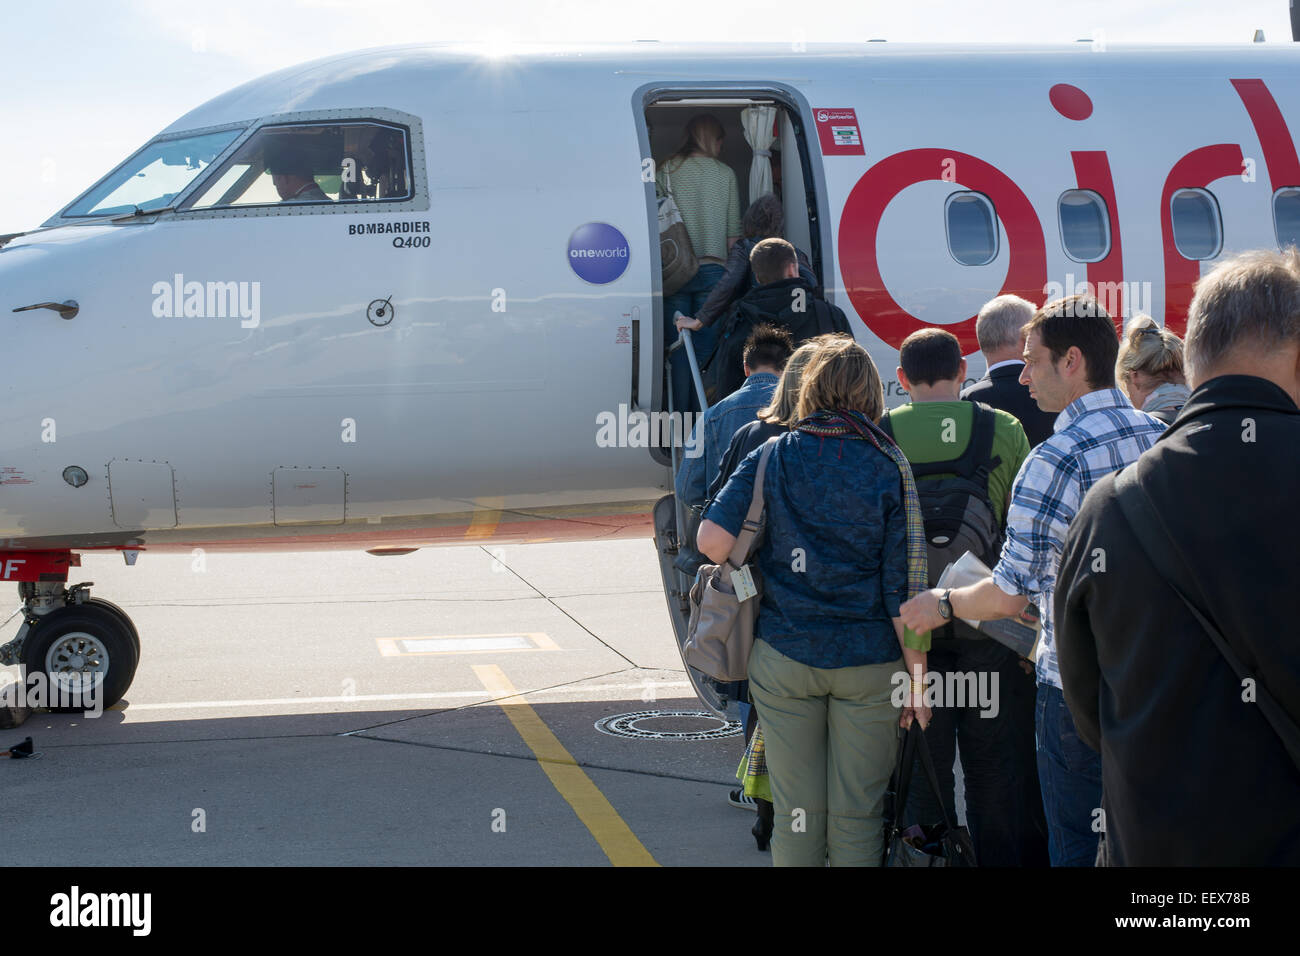 La gente que entra un avión Bombardier operados por Air Berlin desde el suelo Foto de stock